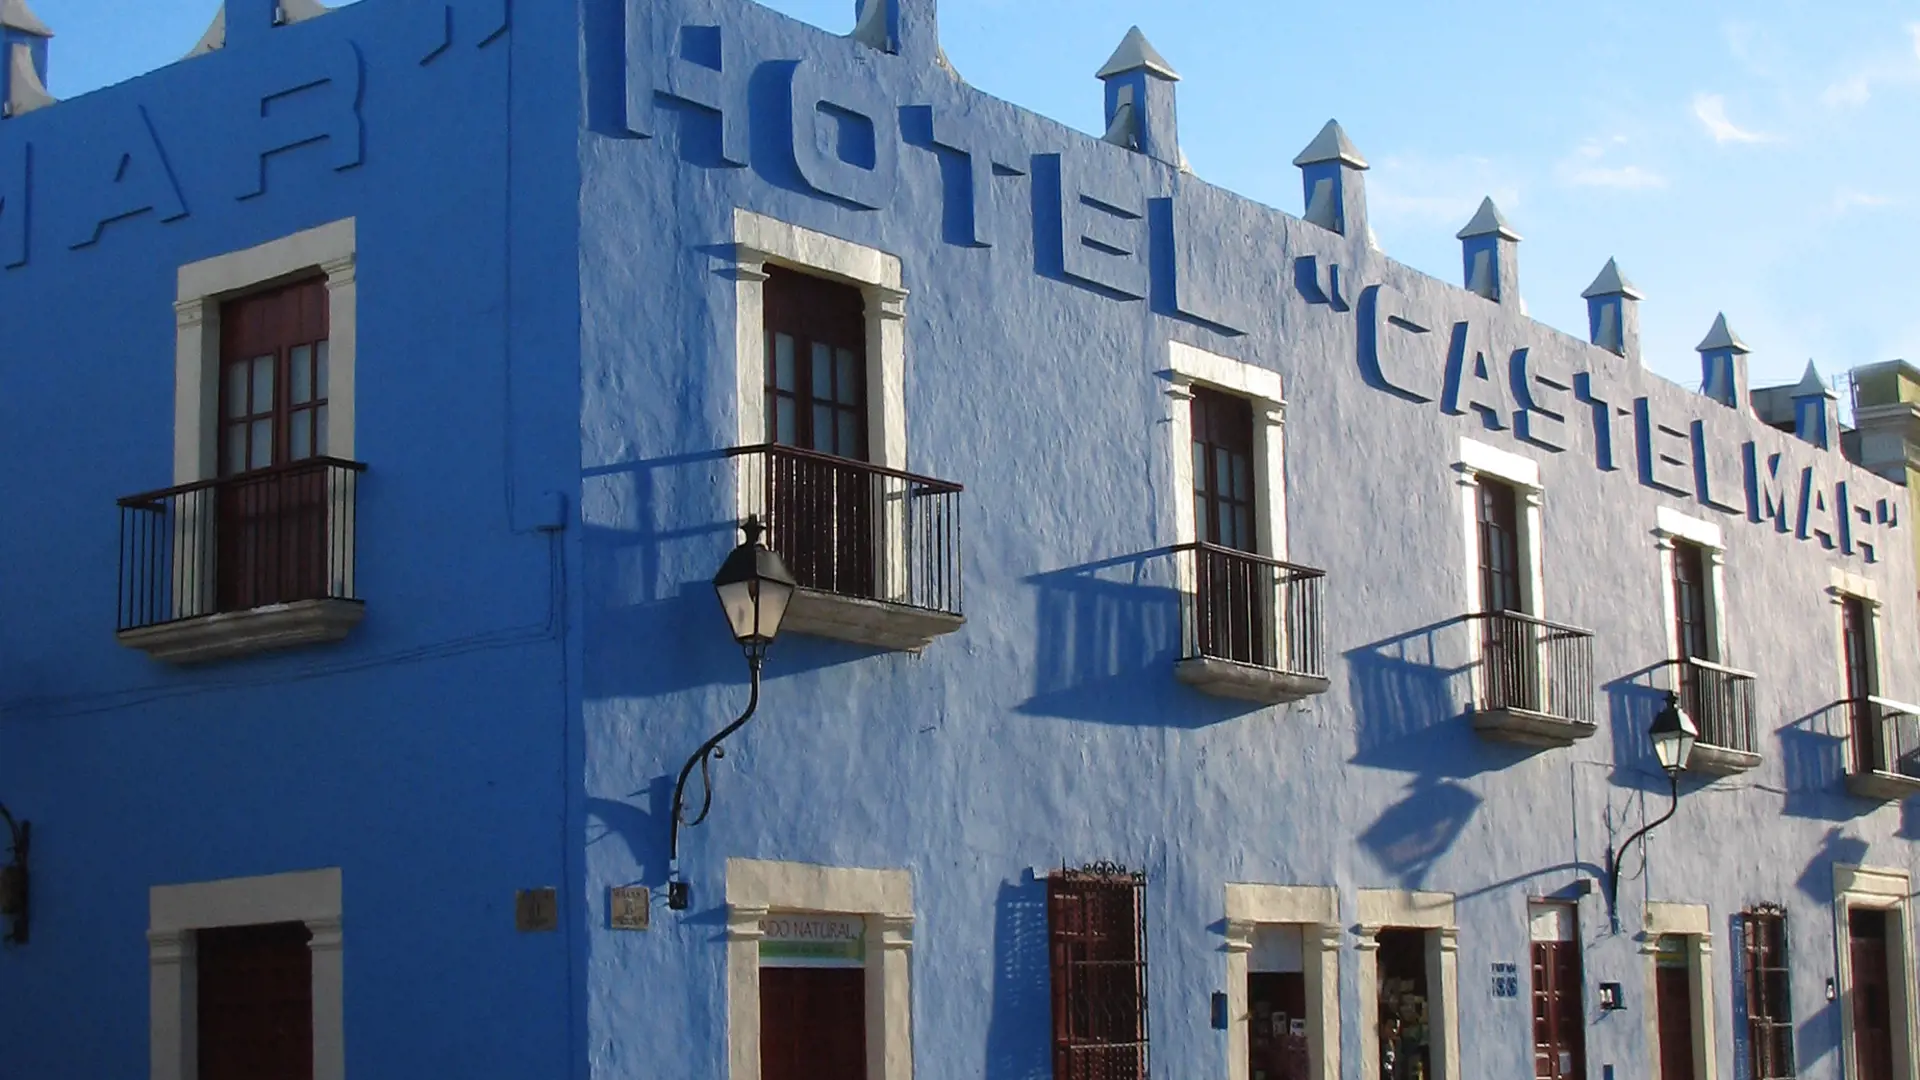 Hotel Castelmar 07.jpg